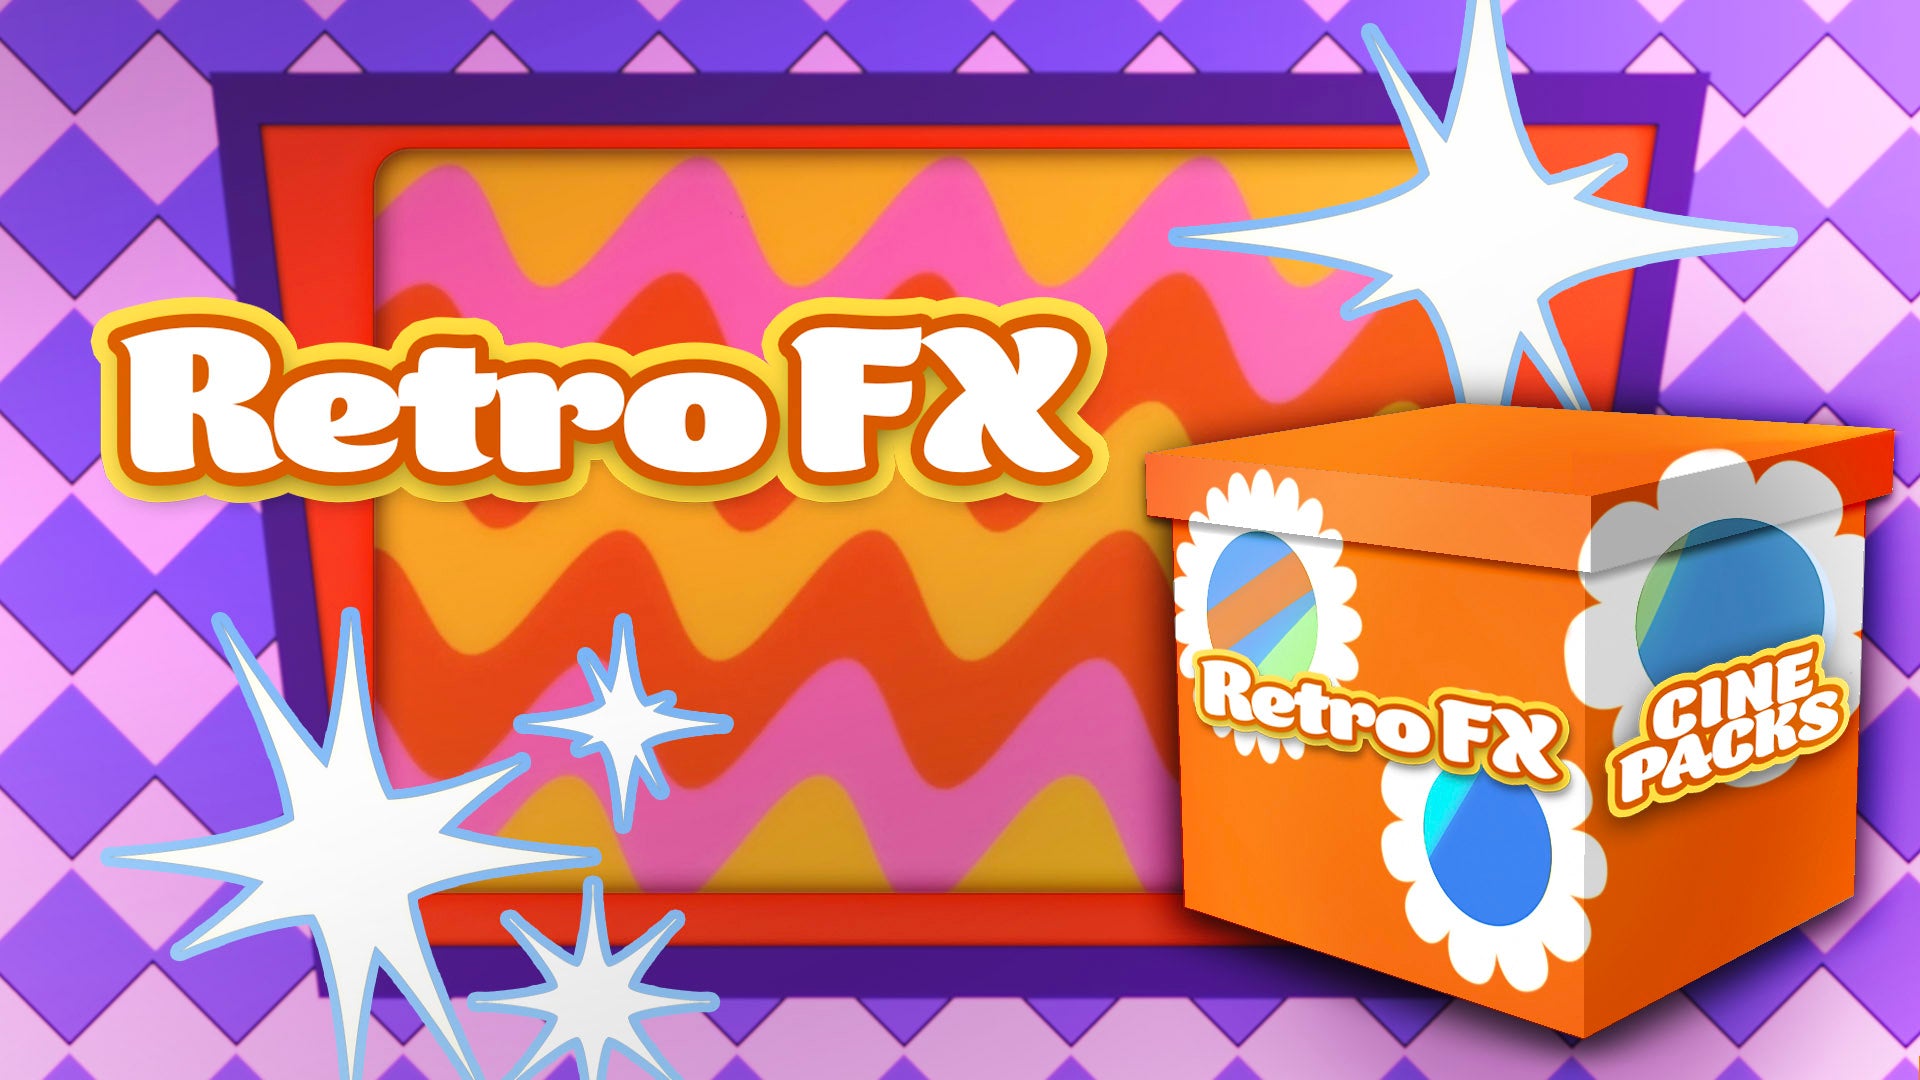 Retro FX - CinePacks